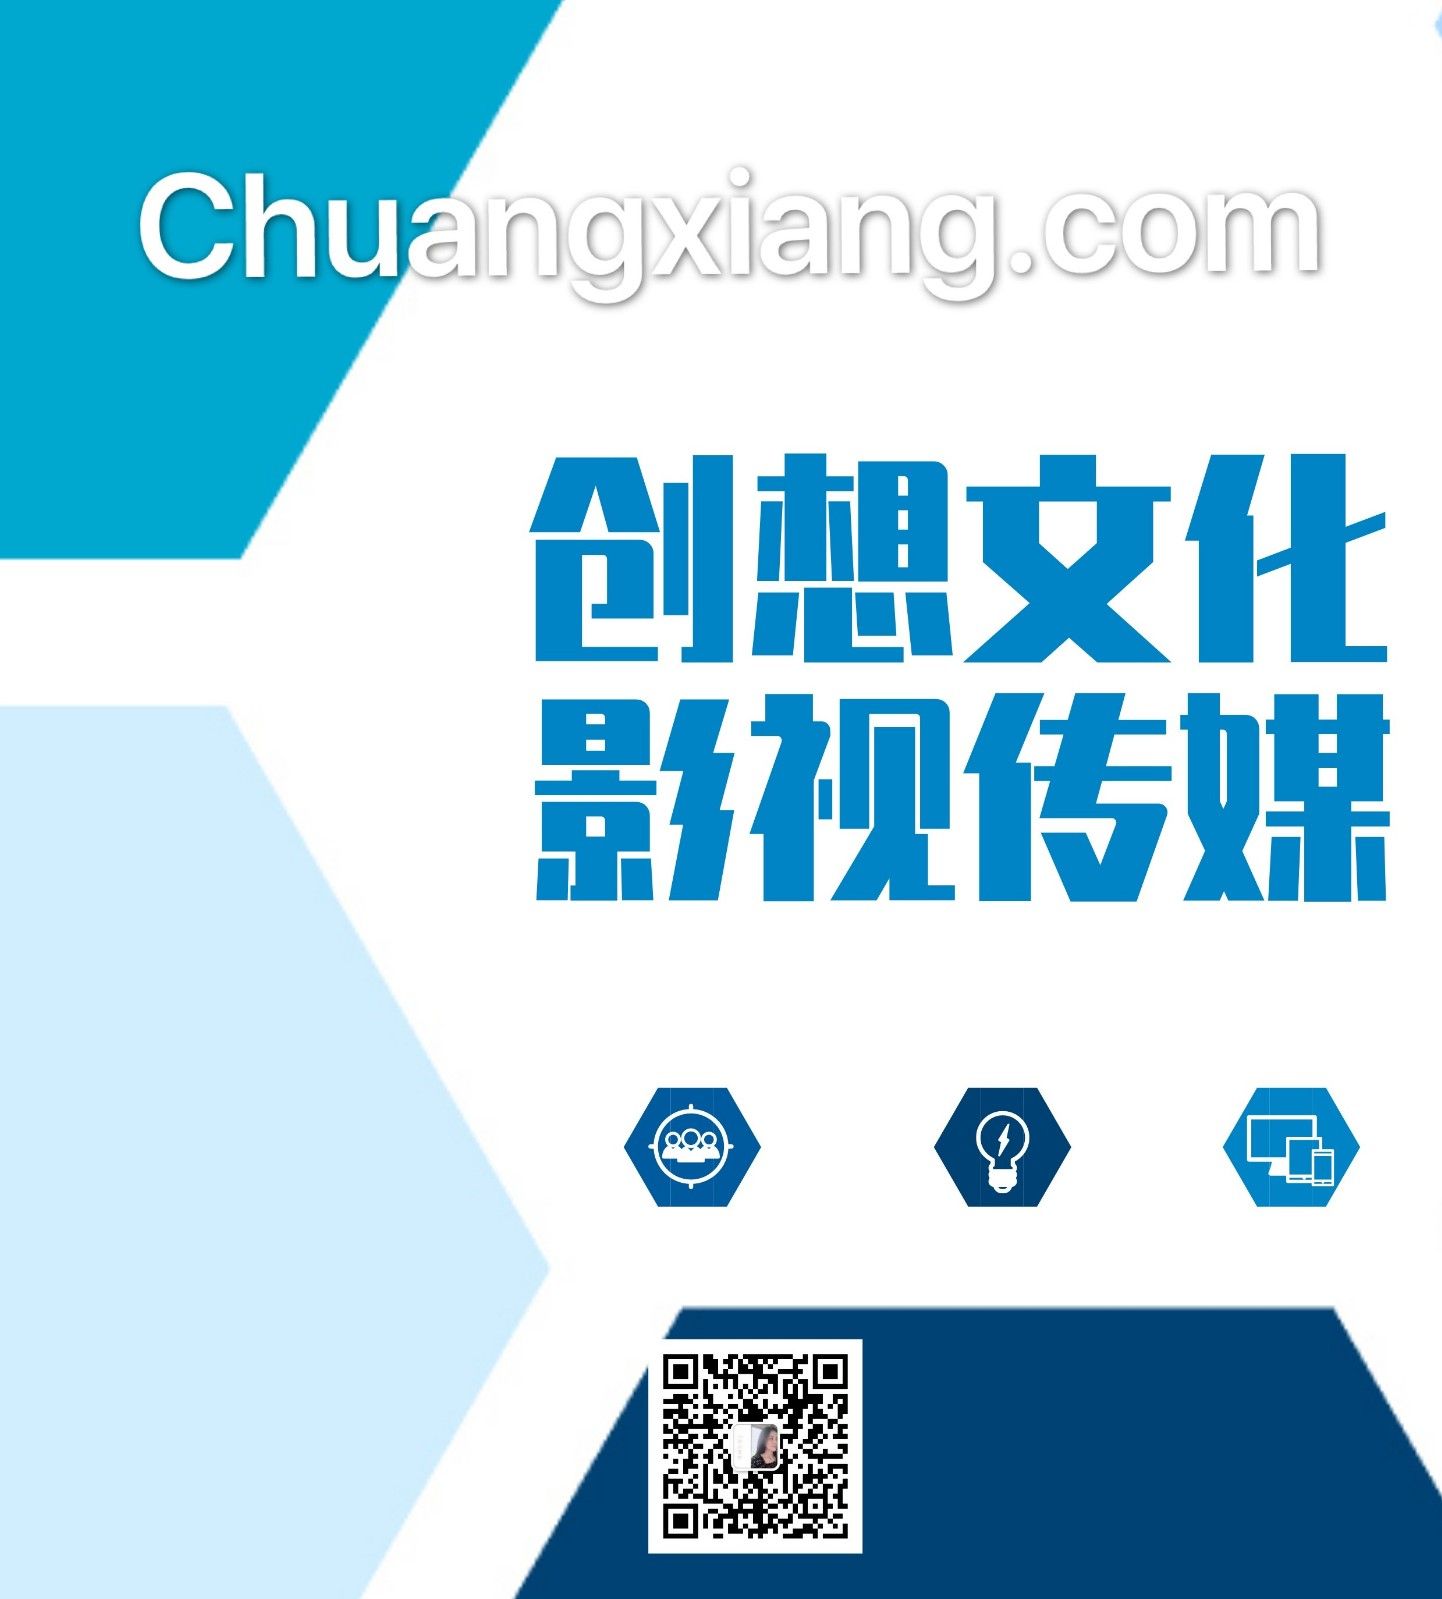 chuangxiang.com